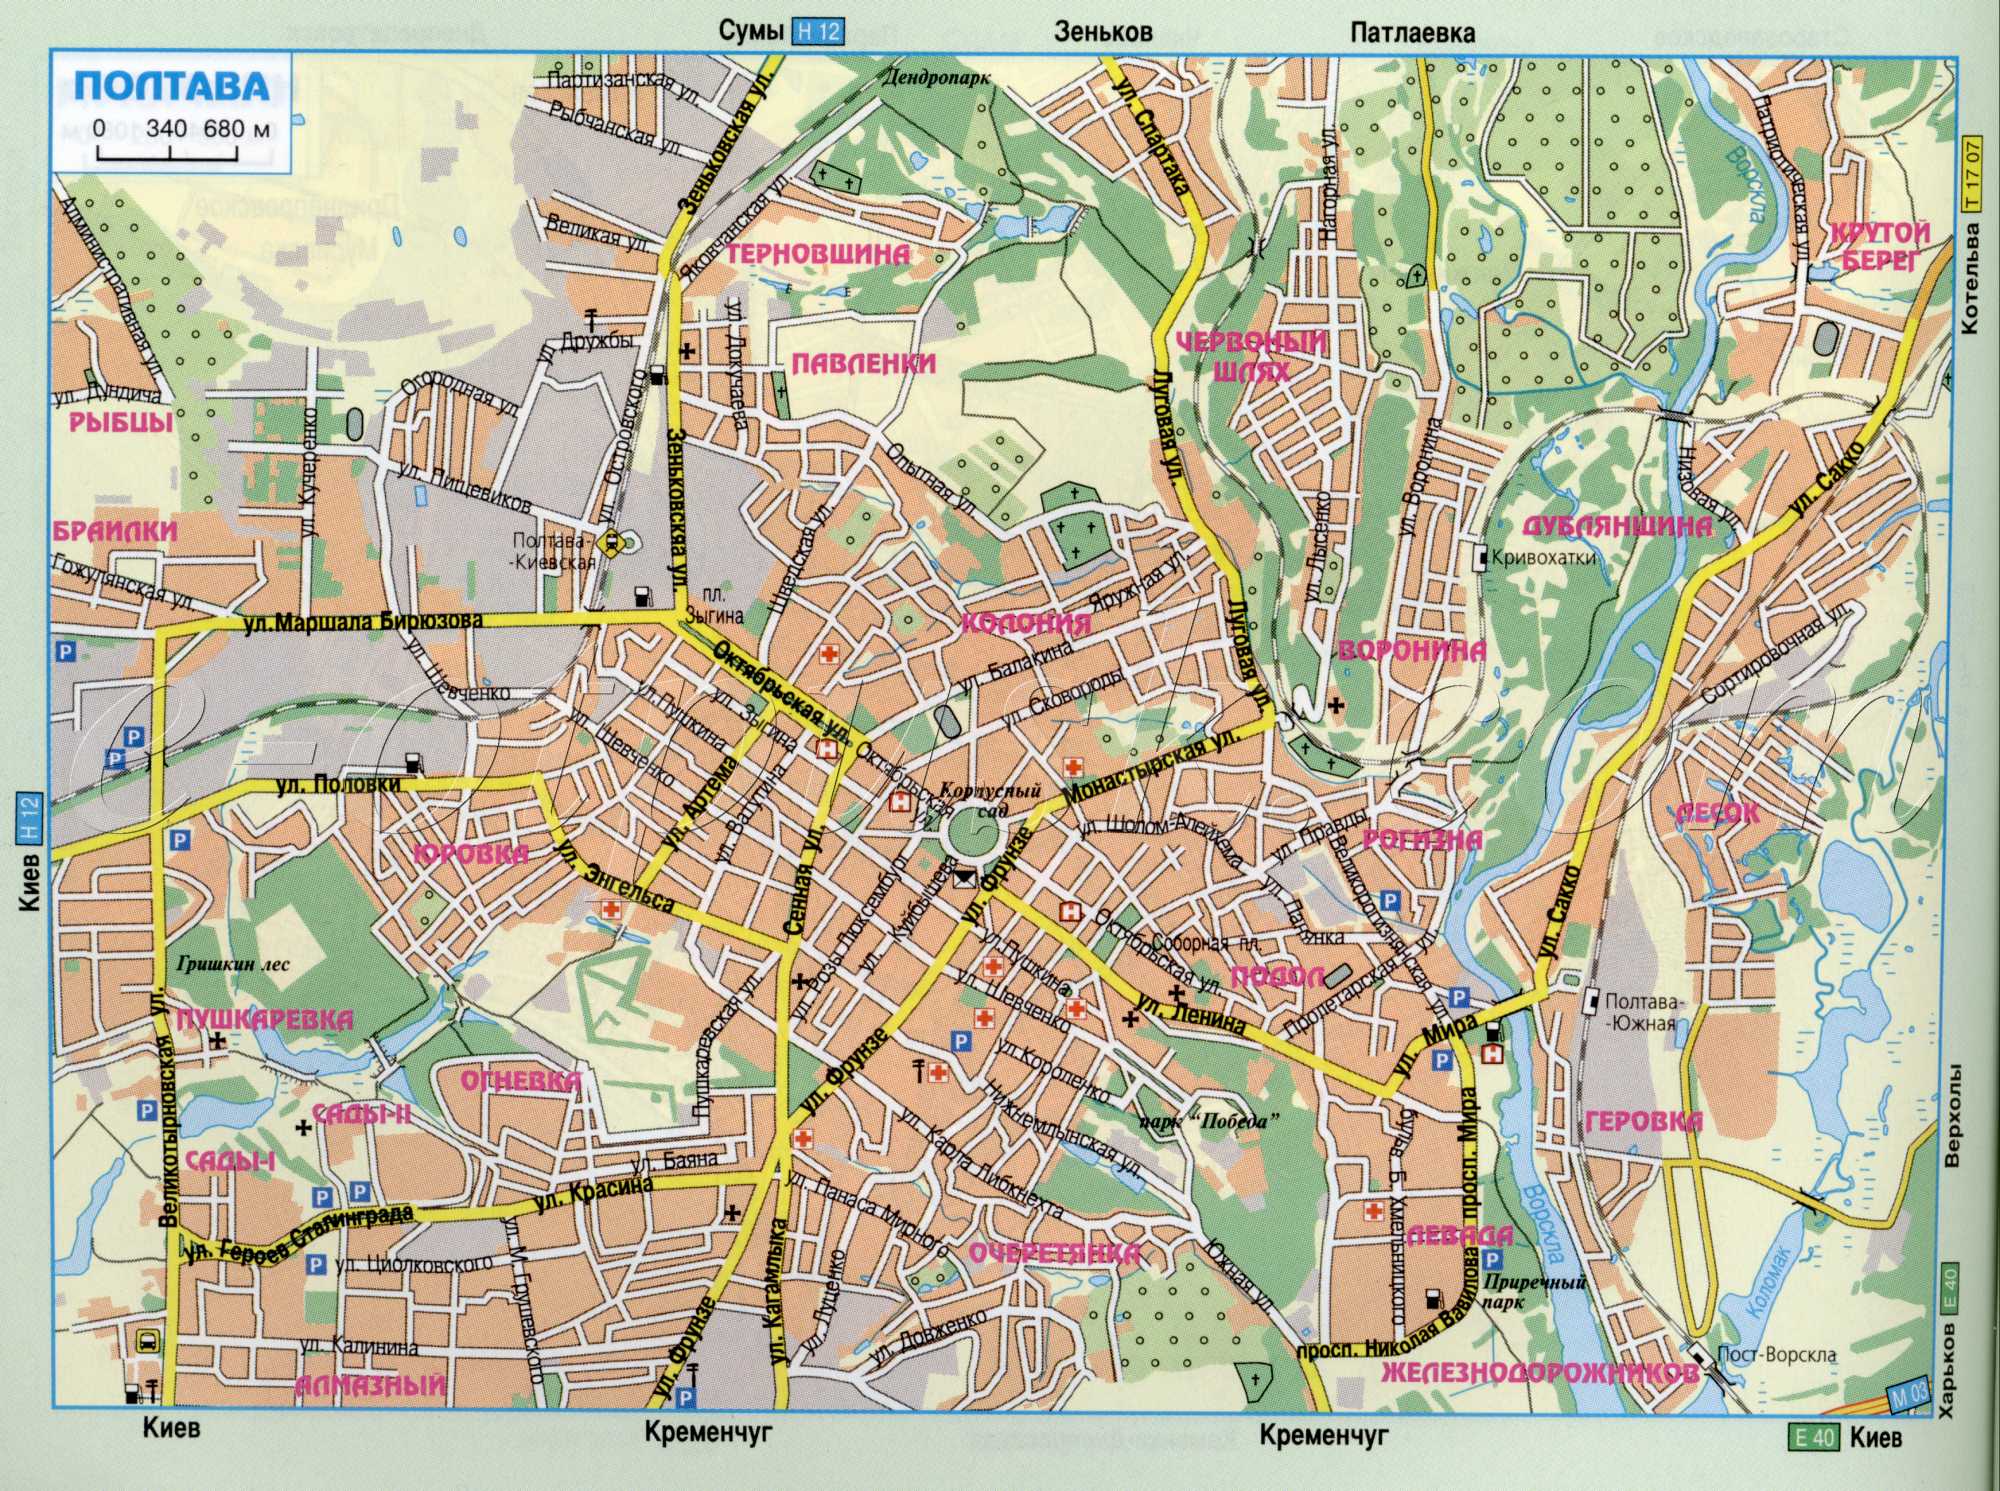 Карта Полтавы, автомобильные дороги города Полтава из атласа авто туриста. скачать бесплатно 